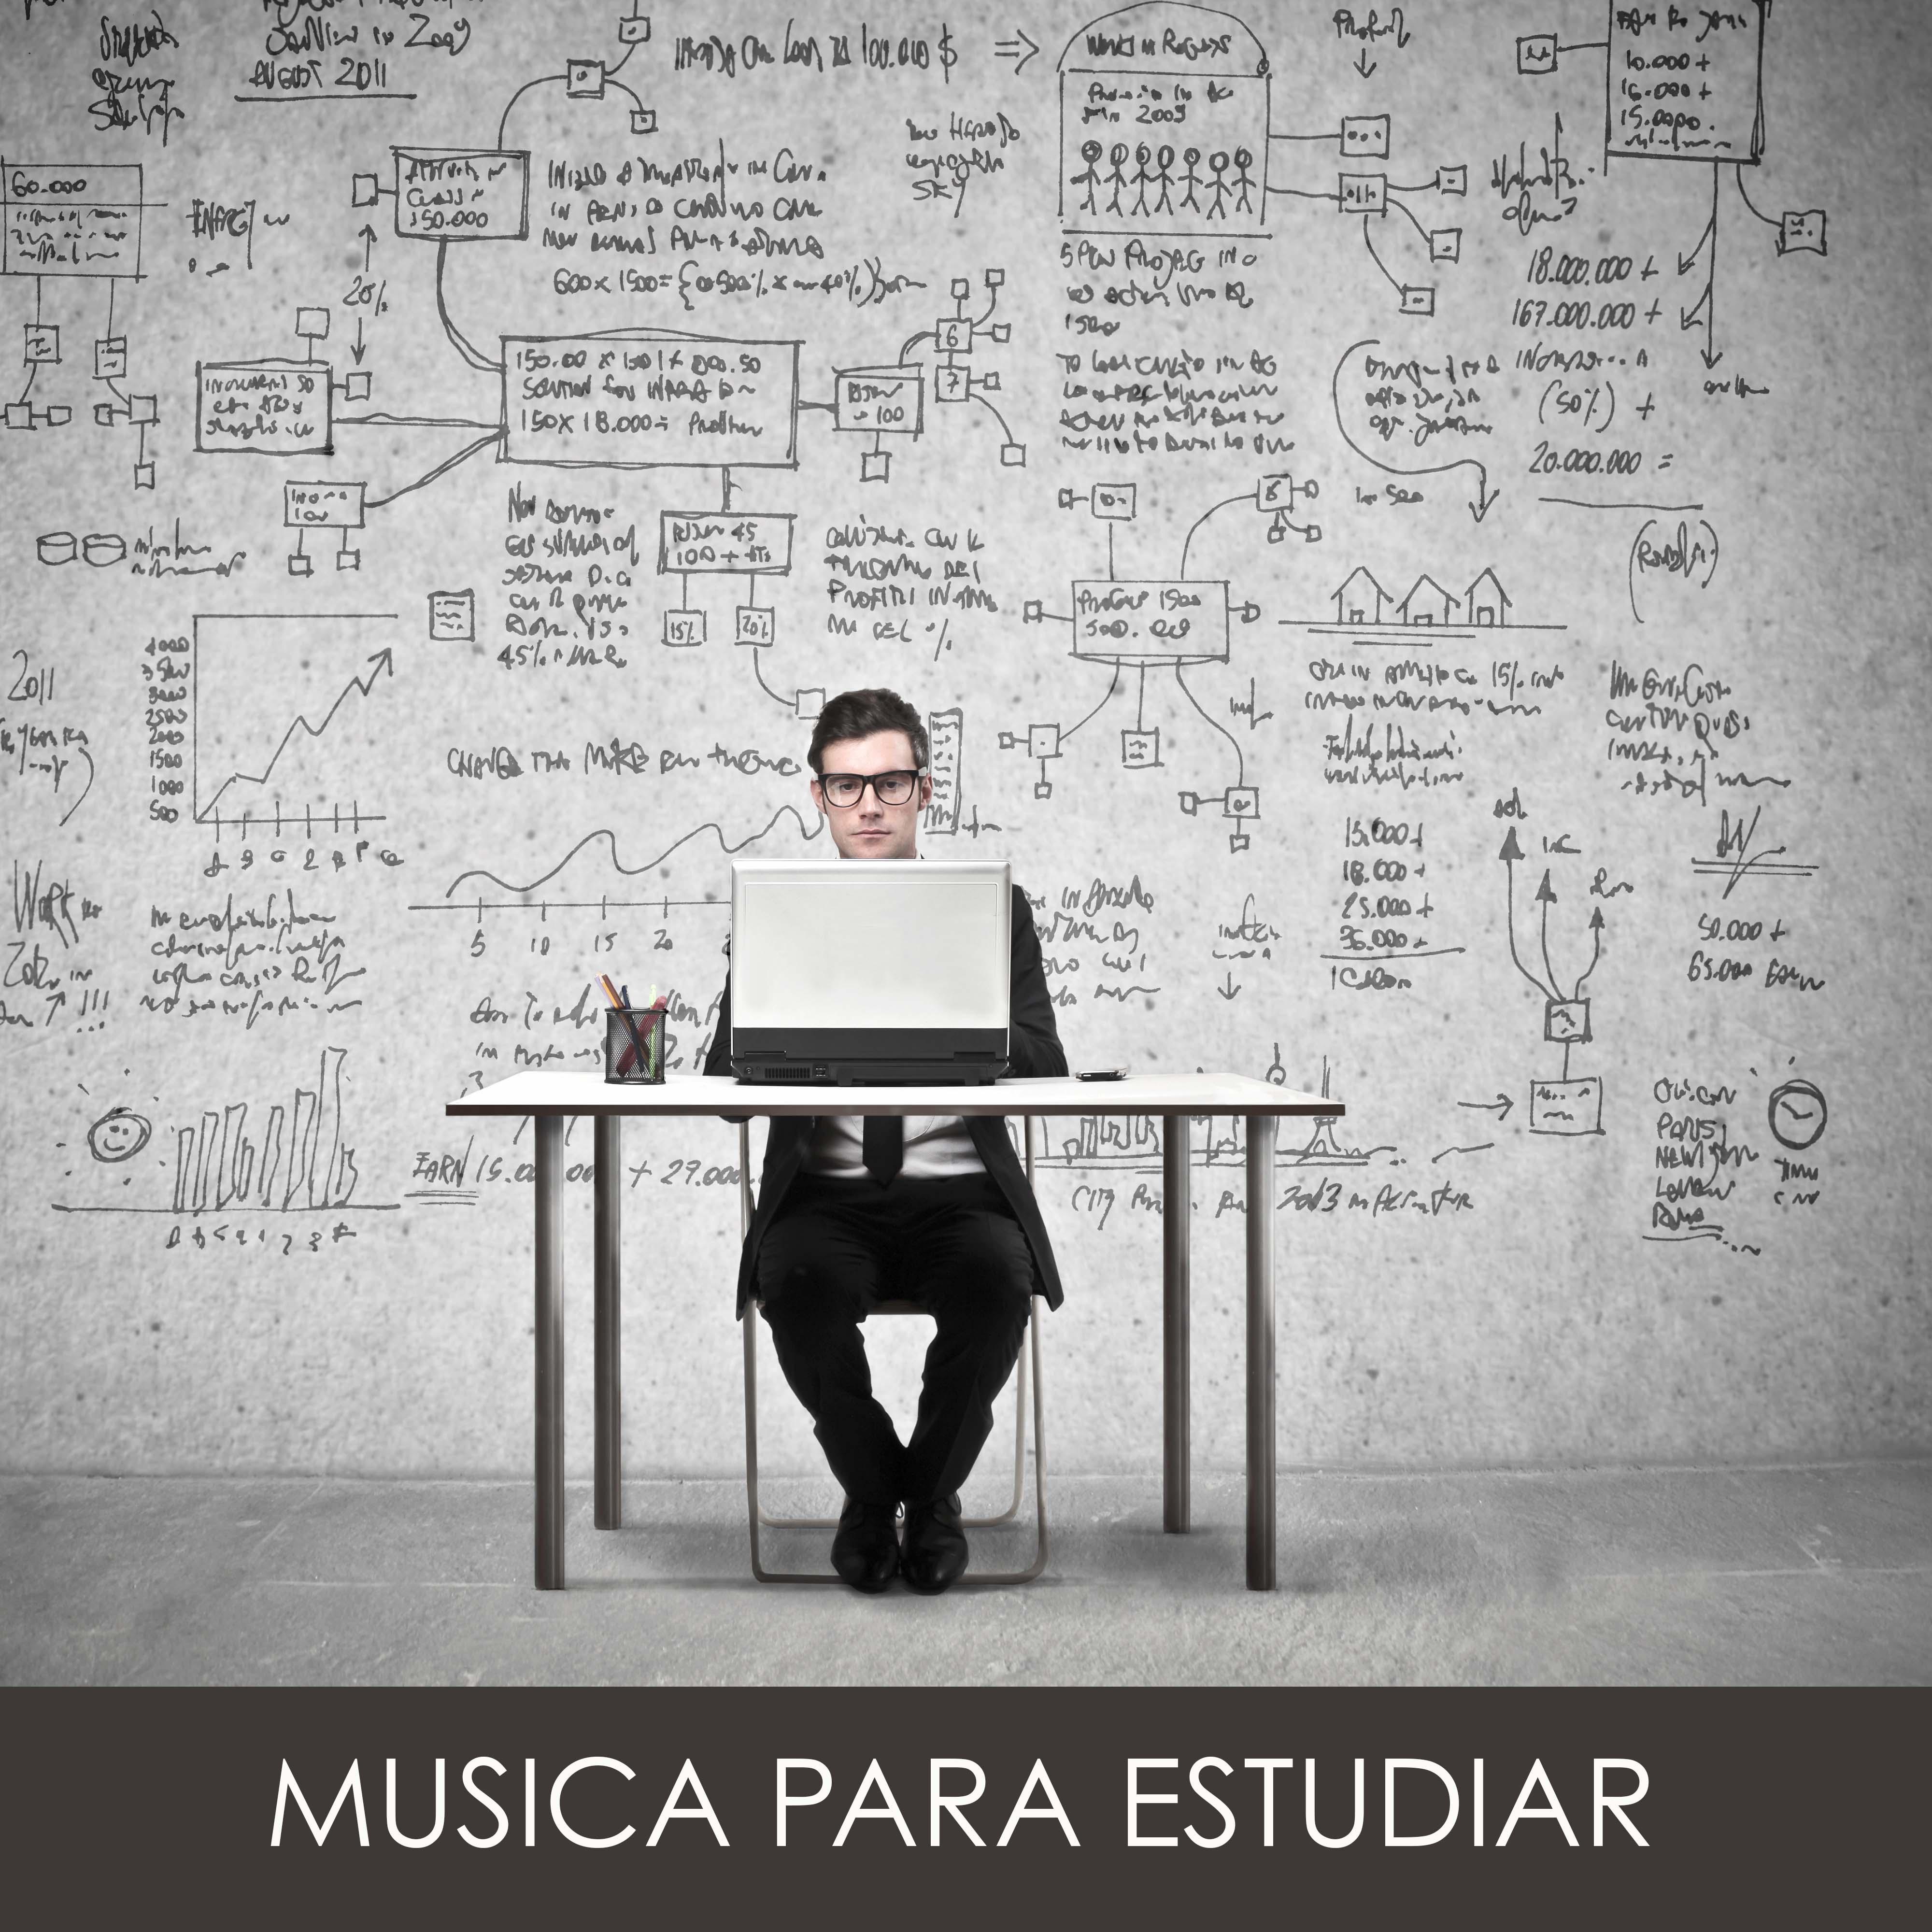 Musica para Estudiar: Musica Clasica para Estudiar, Piano Musica para Concentrarse, Musica Suave Instrumental para el Estudio "